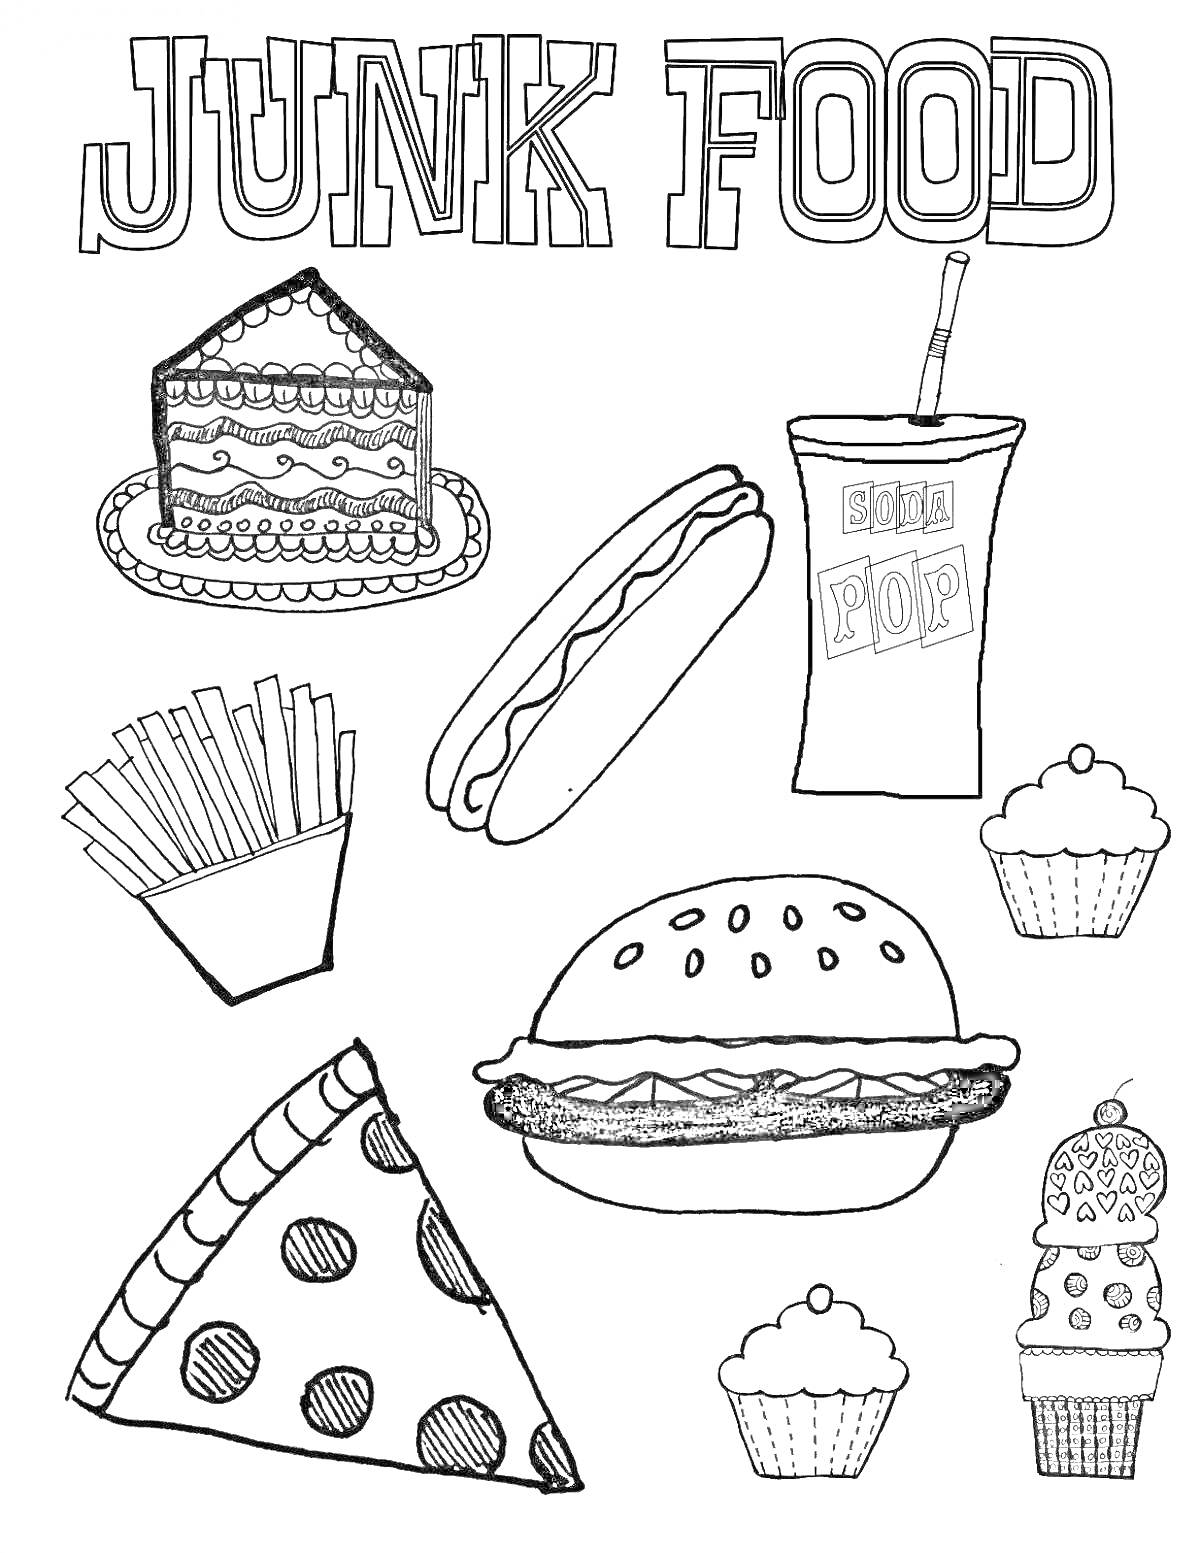 Рисунок с фастфудом: кусок торта, хот-дог, стакан газировки, картофель фри, бургер, пицца, капкейки, мороженое